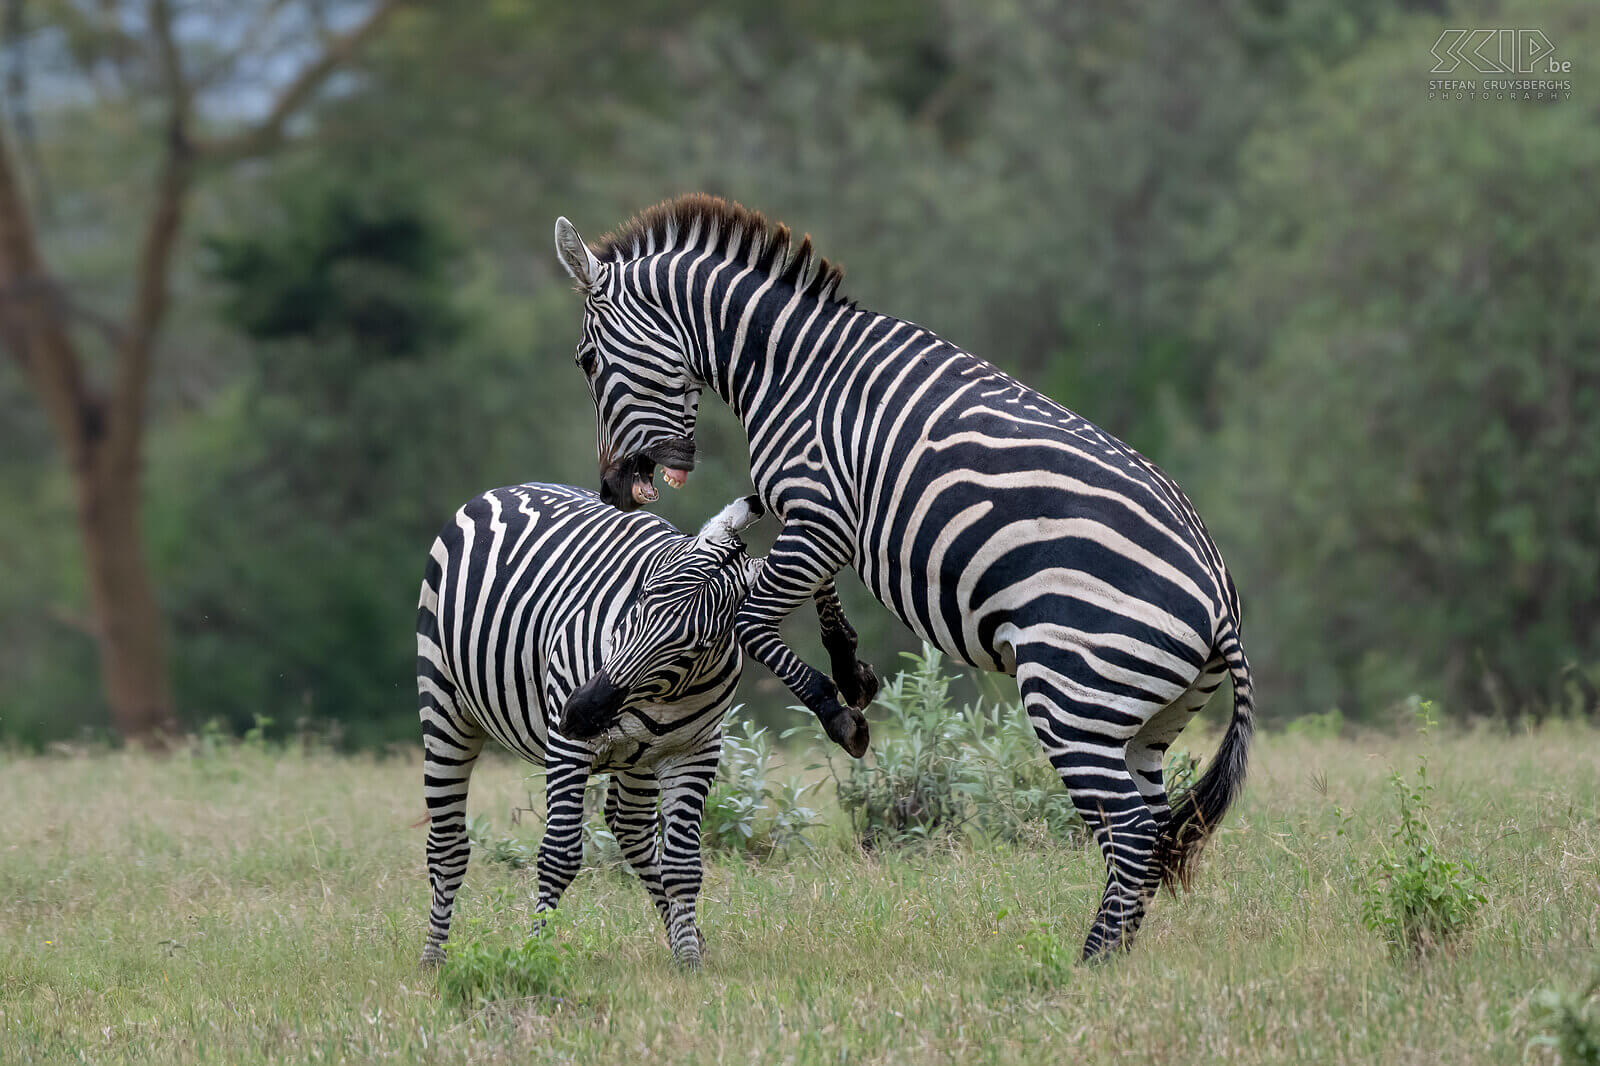 Soysambu - Vechtende zebra's Zebra's zijn sociale dieren die in kleine groepen leven, zogenaamde harems. De harems bestaan uit een mannetje met enkele wijfjes en hun jongen. Af en toe gaat het er echter heftig aan toe als jongen hengsten strijden om hun positie. Wij zagen in Soysambu twee steppezebra's een fel gevecht aangaan. Zebragevechten bestaan voornamelijk uit het bijten in de voor- of achterpoot of nek van de tegenstander. Het meest spectaculaire was als ze op hun achterpoten gingen staan om met te worstelen en te bijten. Af en toe schopten ze met hun achterpoten, wat het meest gevaarlijk is om serieuze verwondingen op te lopen. Stefan Cruysberghs